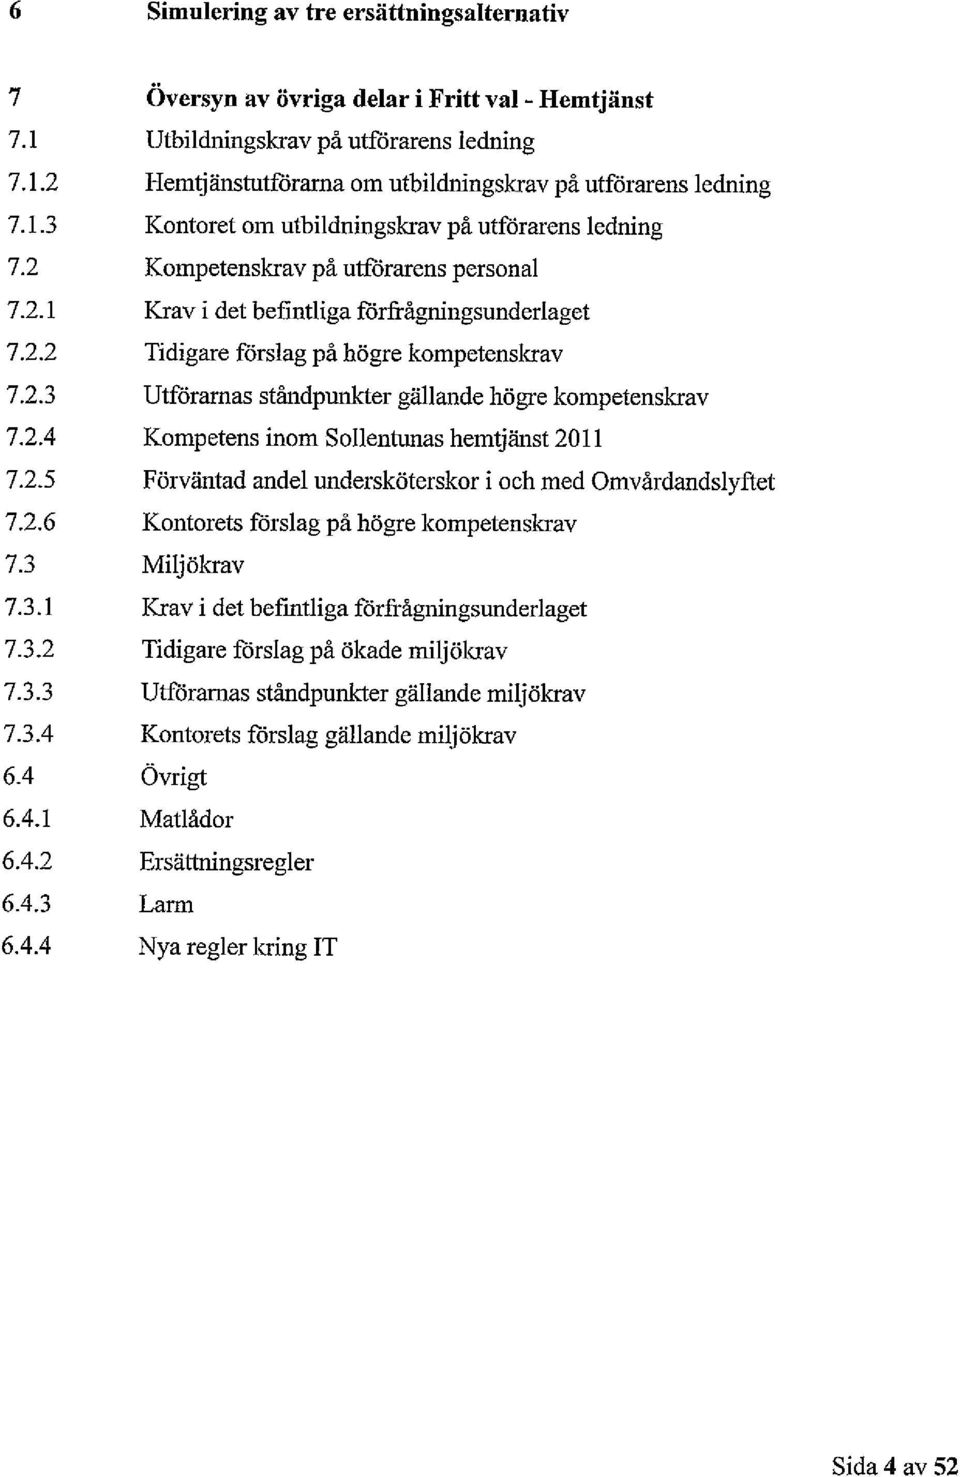 2.4 Kompetens inom Sollentunas hemtjänst 2011 7.2.5 Förväntad andel undersköterskor i och med Omvårdandslyftet 7.2.6 Kontorets förslag på högre kompetenskrav 7.3 